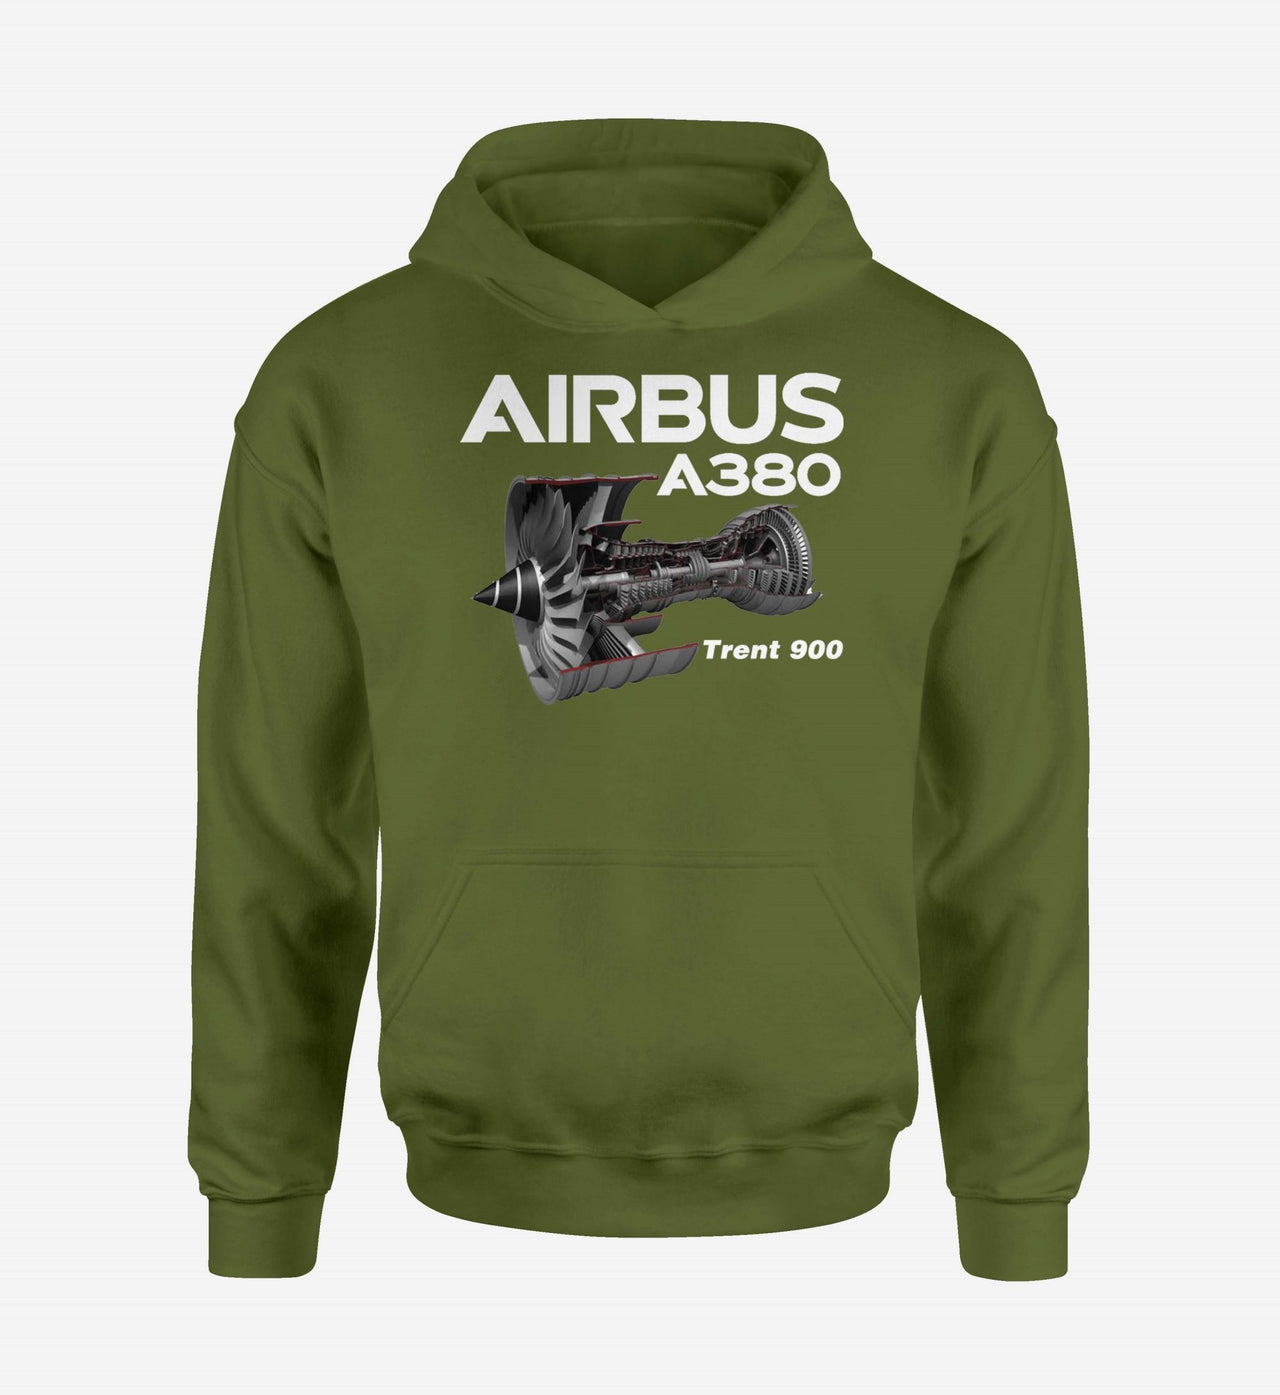 Airbus A380 & Trent 900 Engine Designed Hoodies